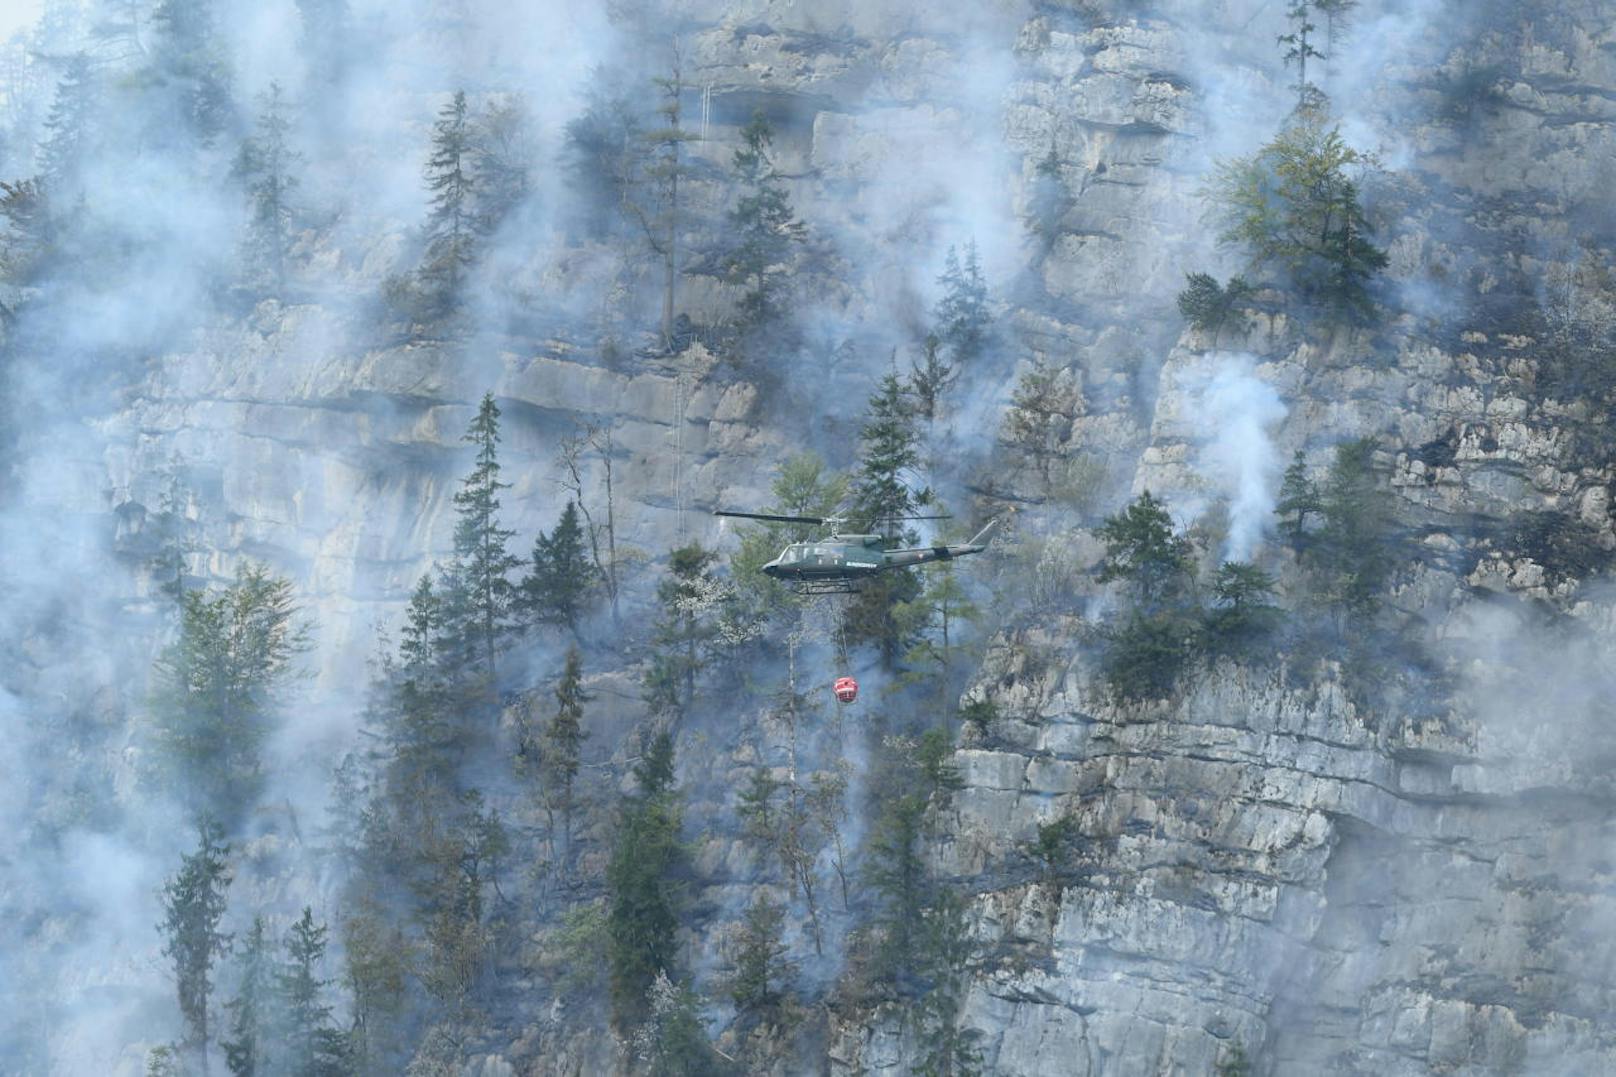 Das Bundesheer unterstützte die Feuerwehr aus der Luft beim Kampf gegen einen Waldbrand in unwegsamem Gelände.